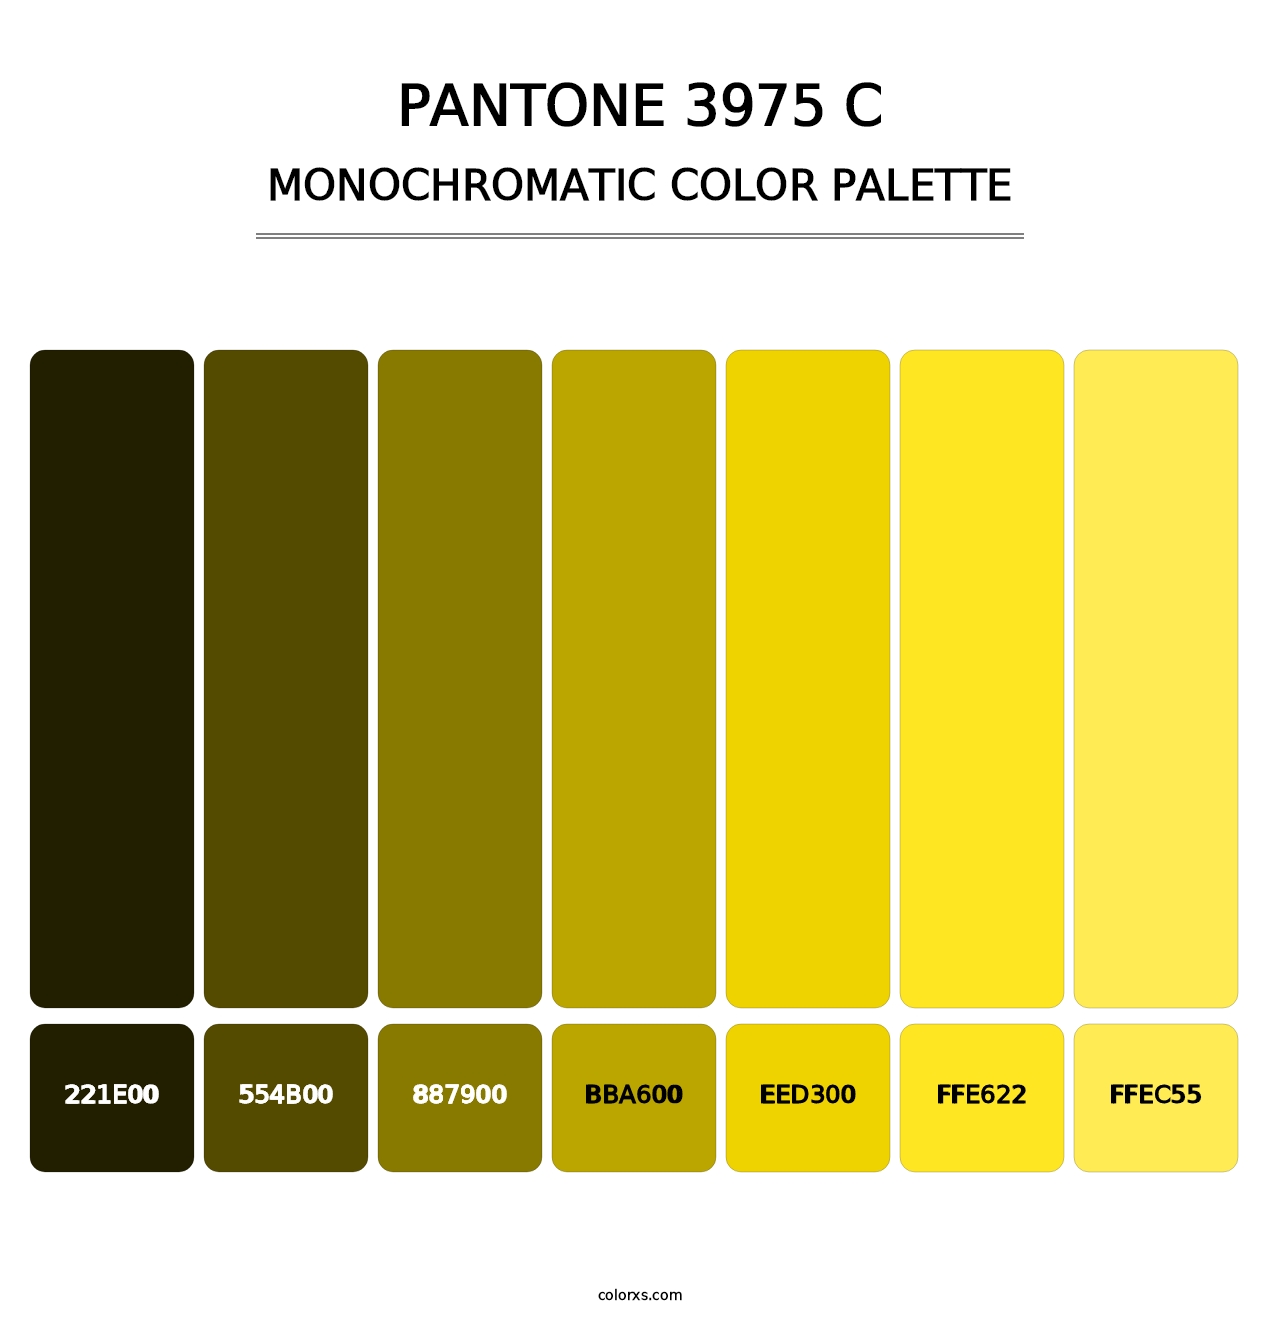 PANTONE 3975 C - Monochromatic Color Palette